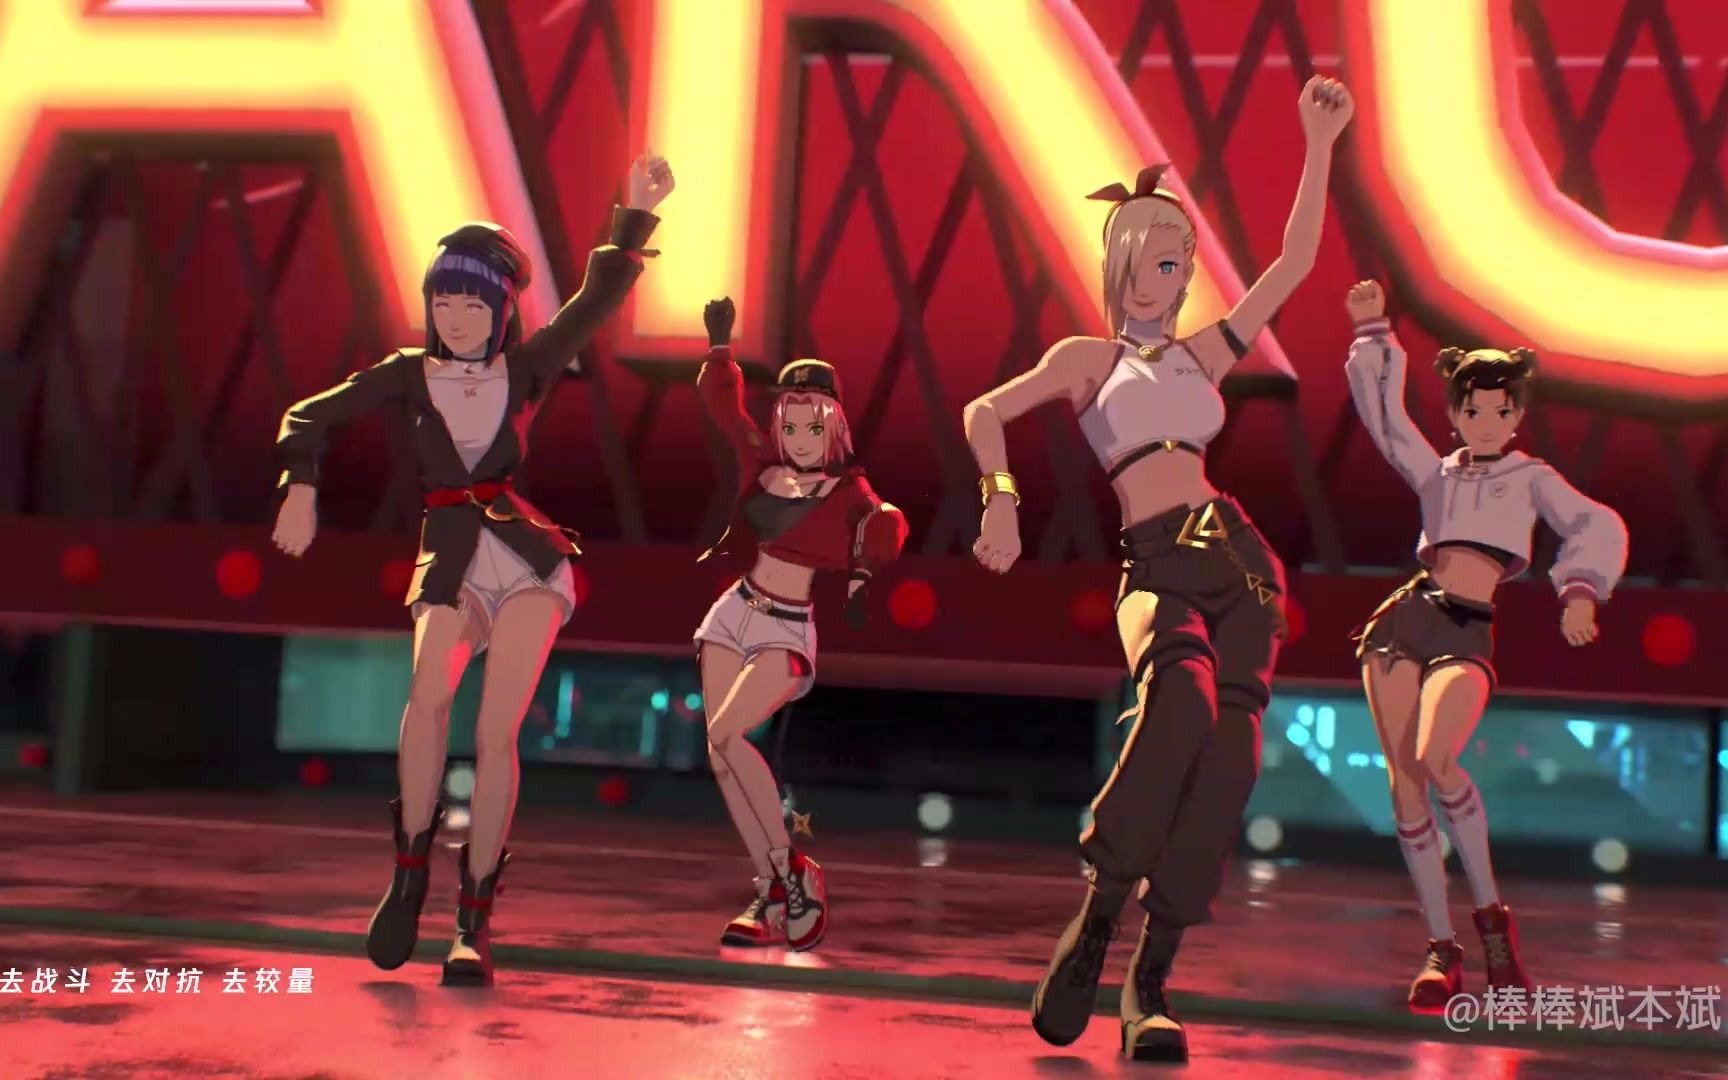 【火影】当木叶四美组成了街舞女团，这是我见过的最强粉丝应援！！！